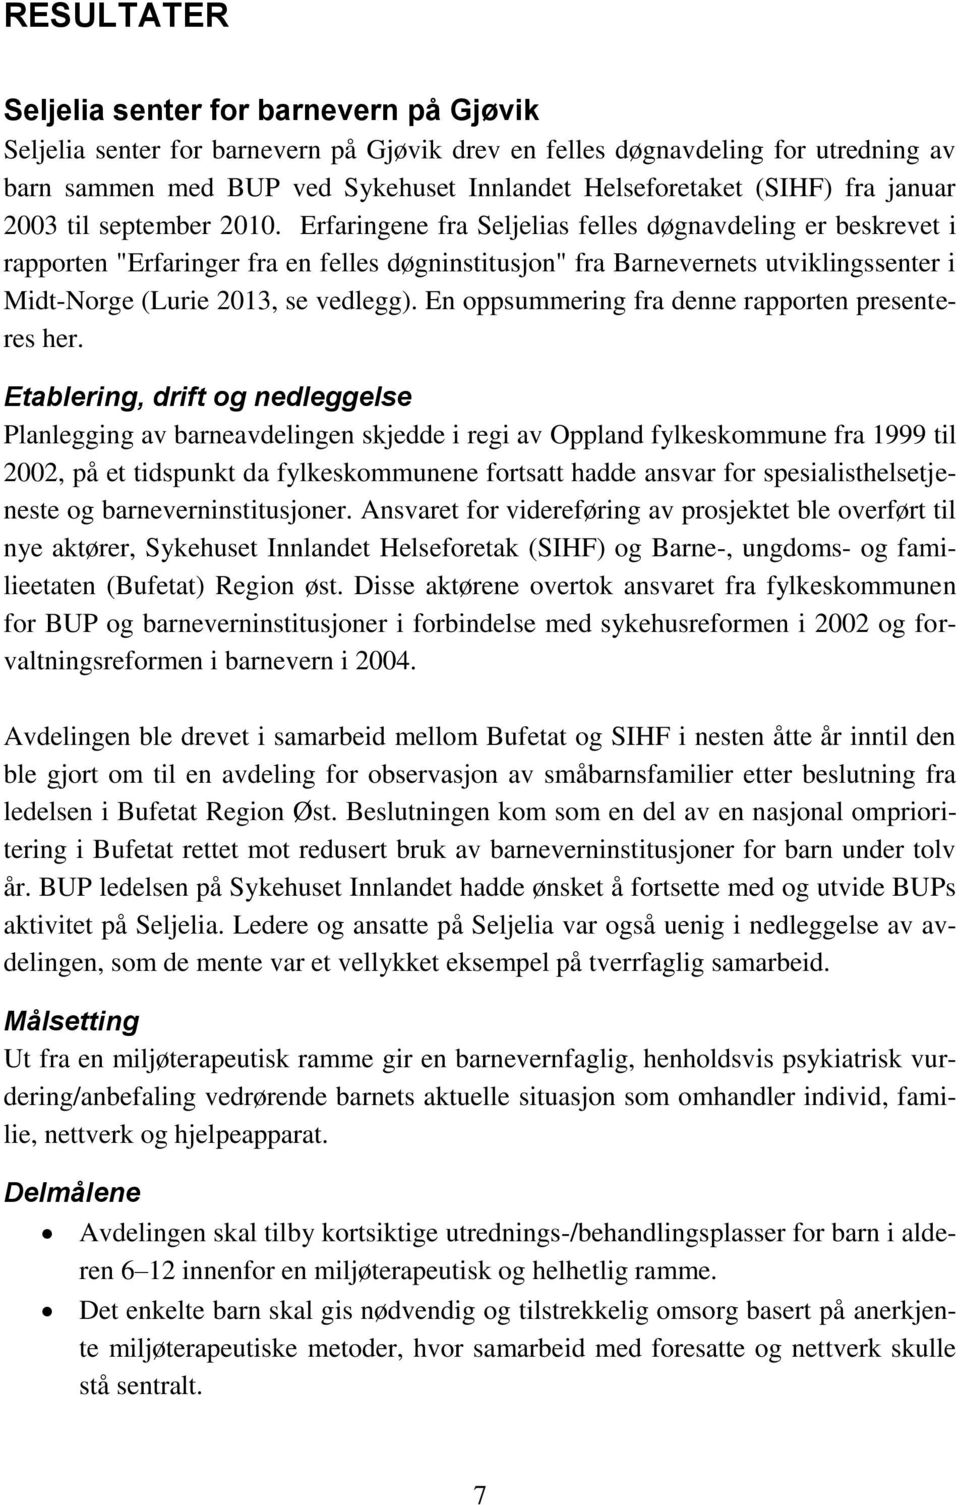 Erfaringene fra Seljelias felles døgnavdeling er beskrevet i rapporten "Erfaringer fra en felles døgninstitusjon" fra Barnevernets utviklingssenter i Midt-Norge (Lurie 2013, se vedlegg).